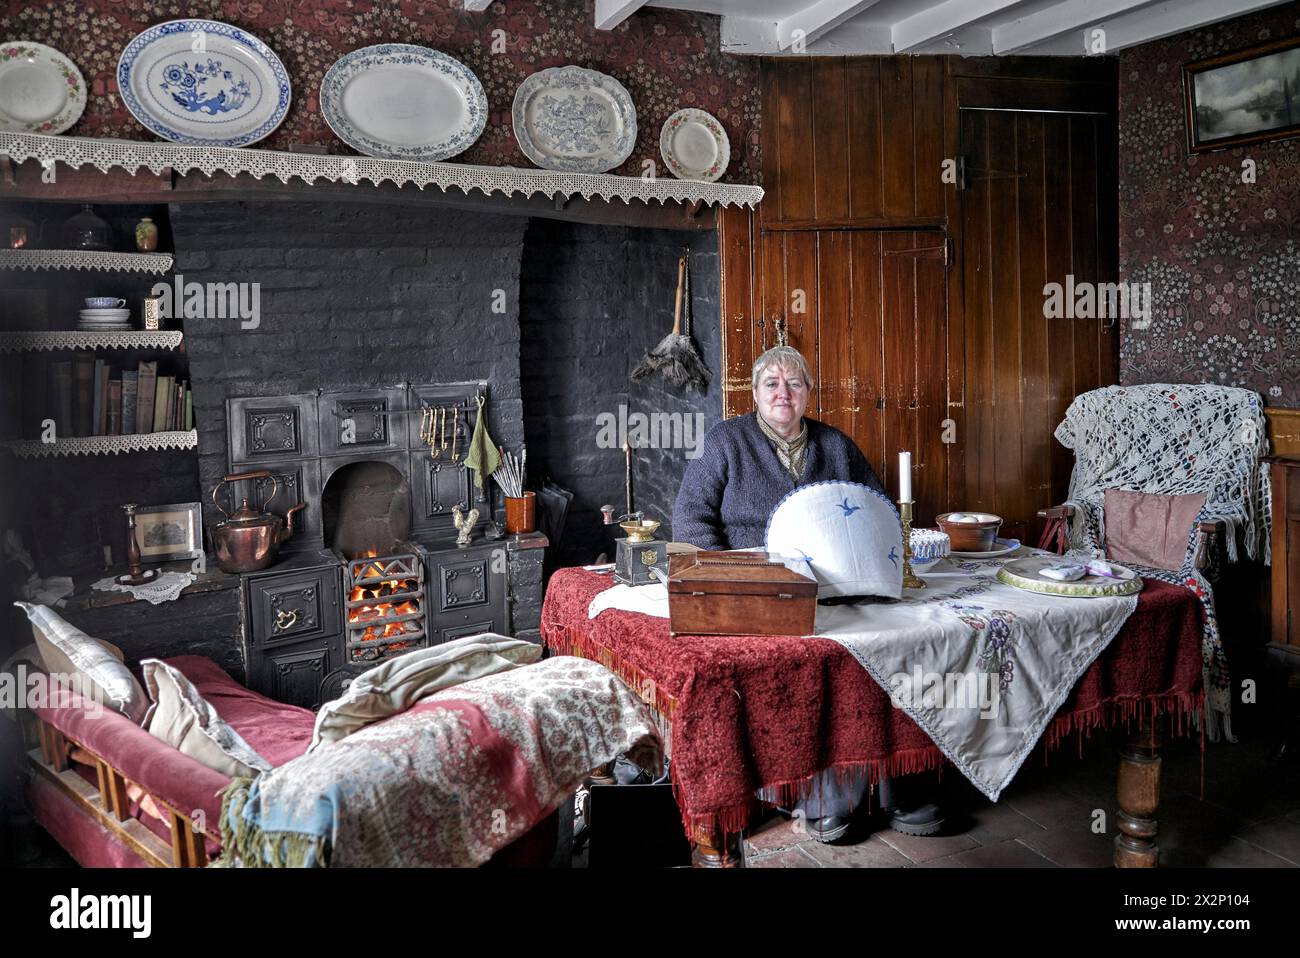 Musée Black Country. Employé féminin accueillant des visiteurs dans une maison de type chalet préservée des années 1800/début des années 1900. Chambre de l'époque victorienne Angleterre Royaume-Uni Banque D'Images